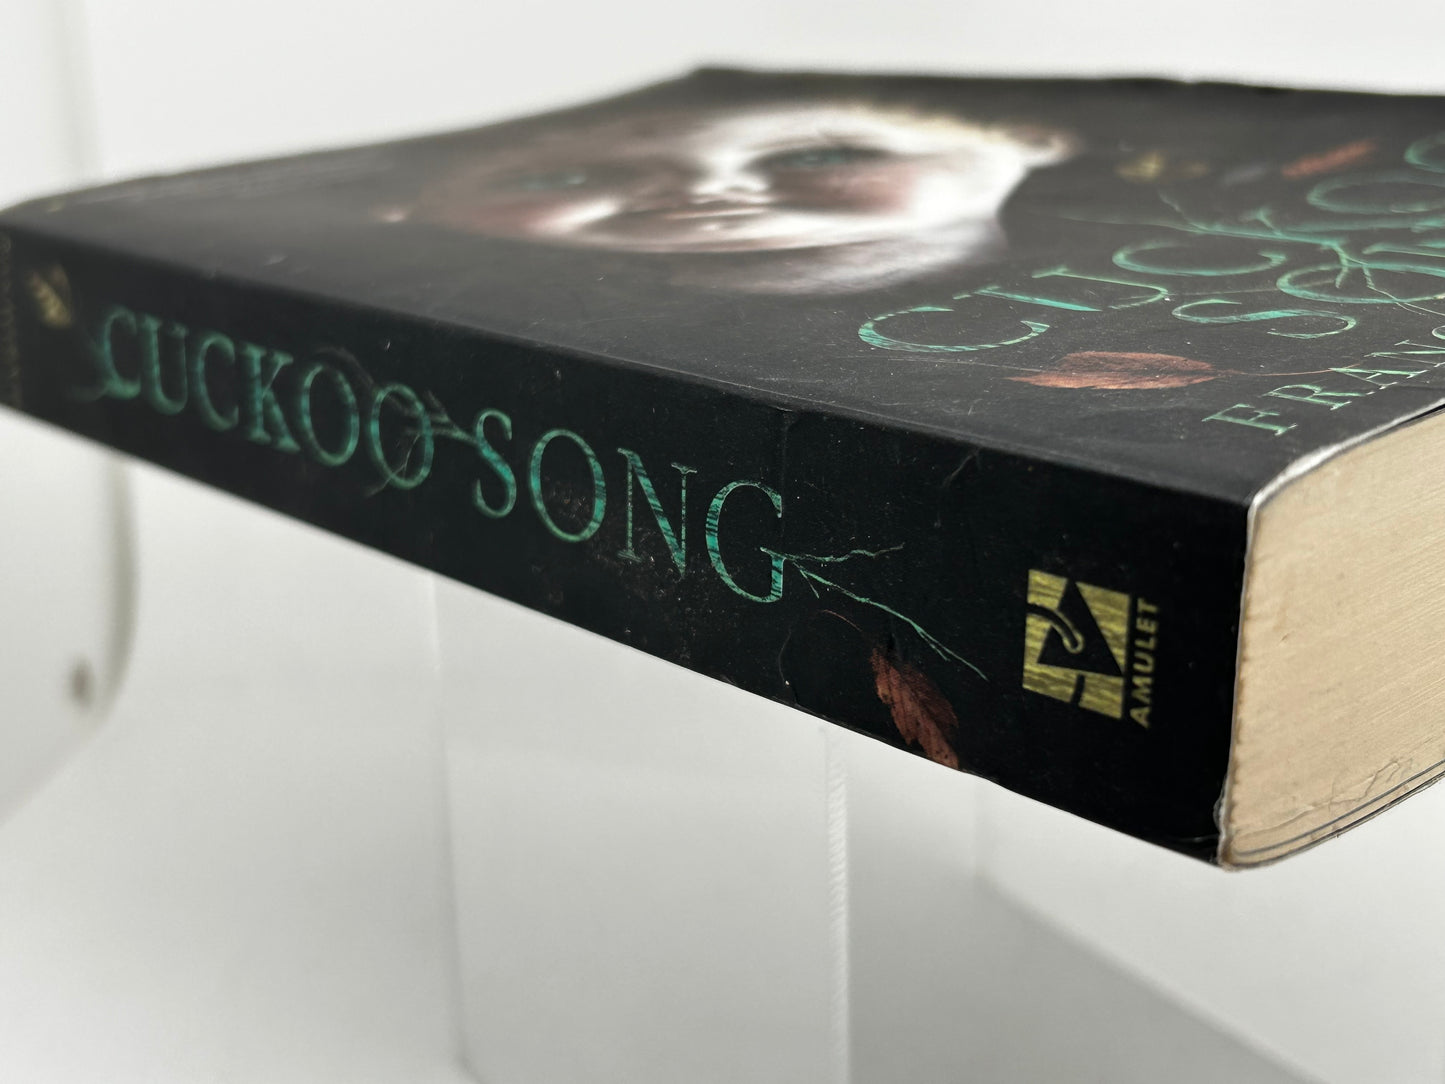 Cuckoo's Song AMULET Paperback Frances Hardinge SF06